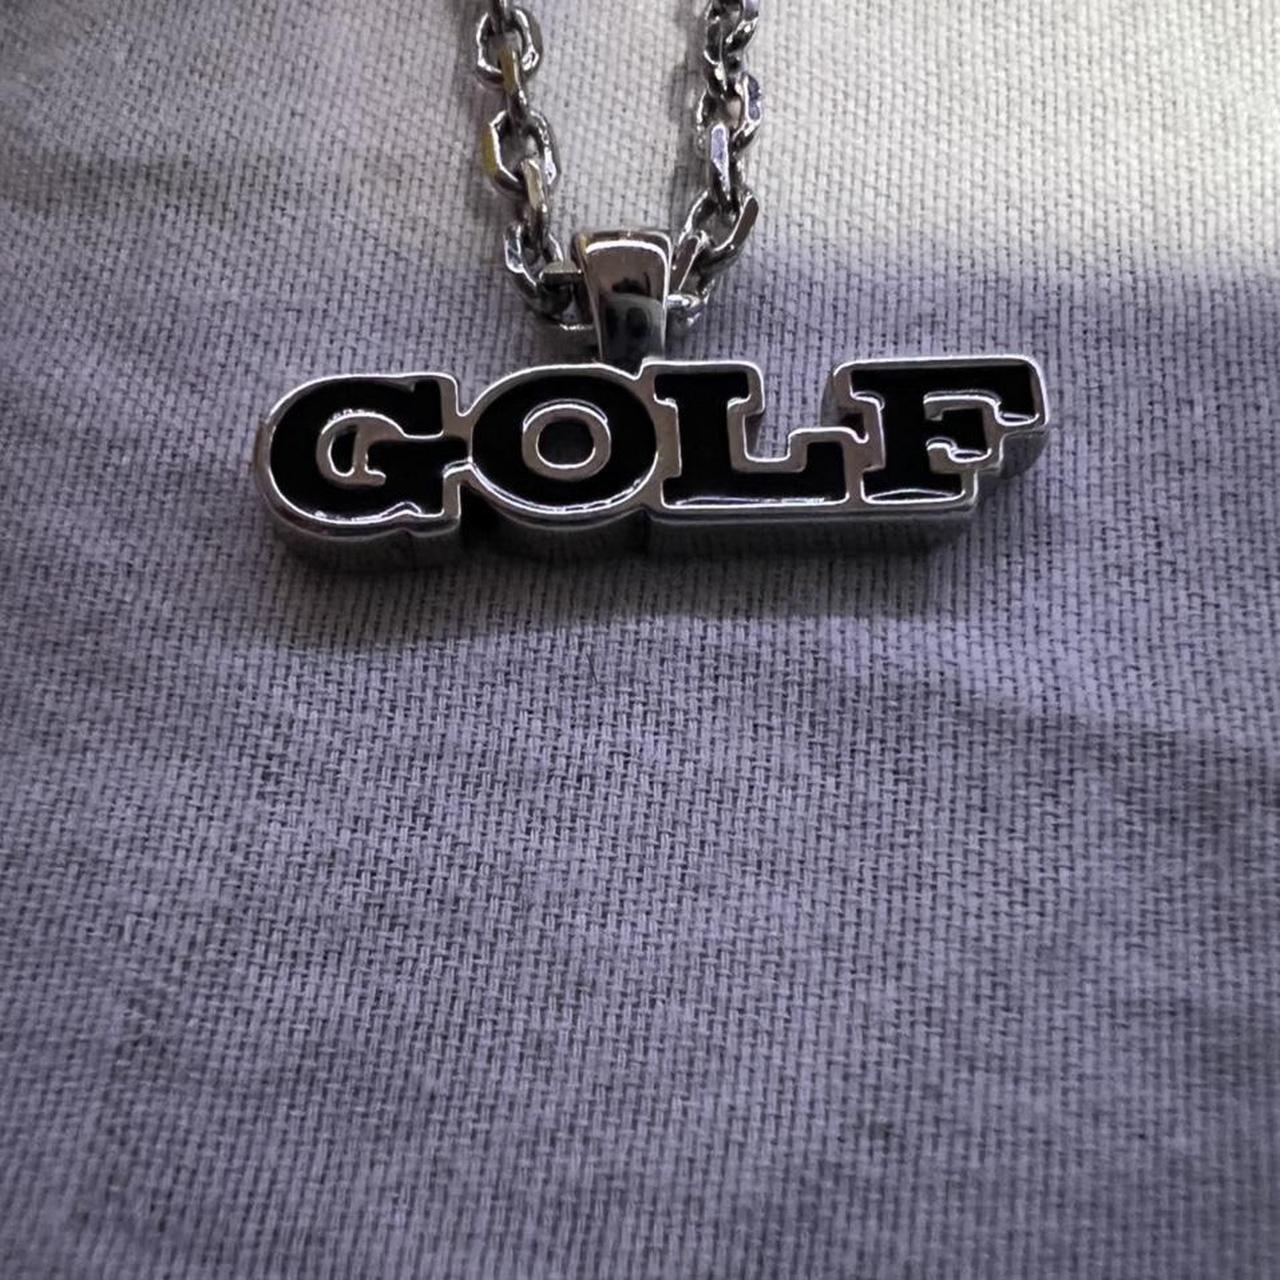 Golf wang-necklace - Depop